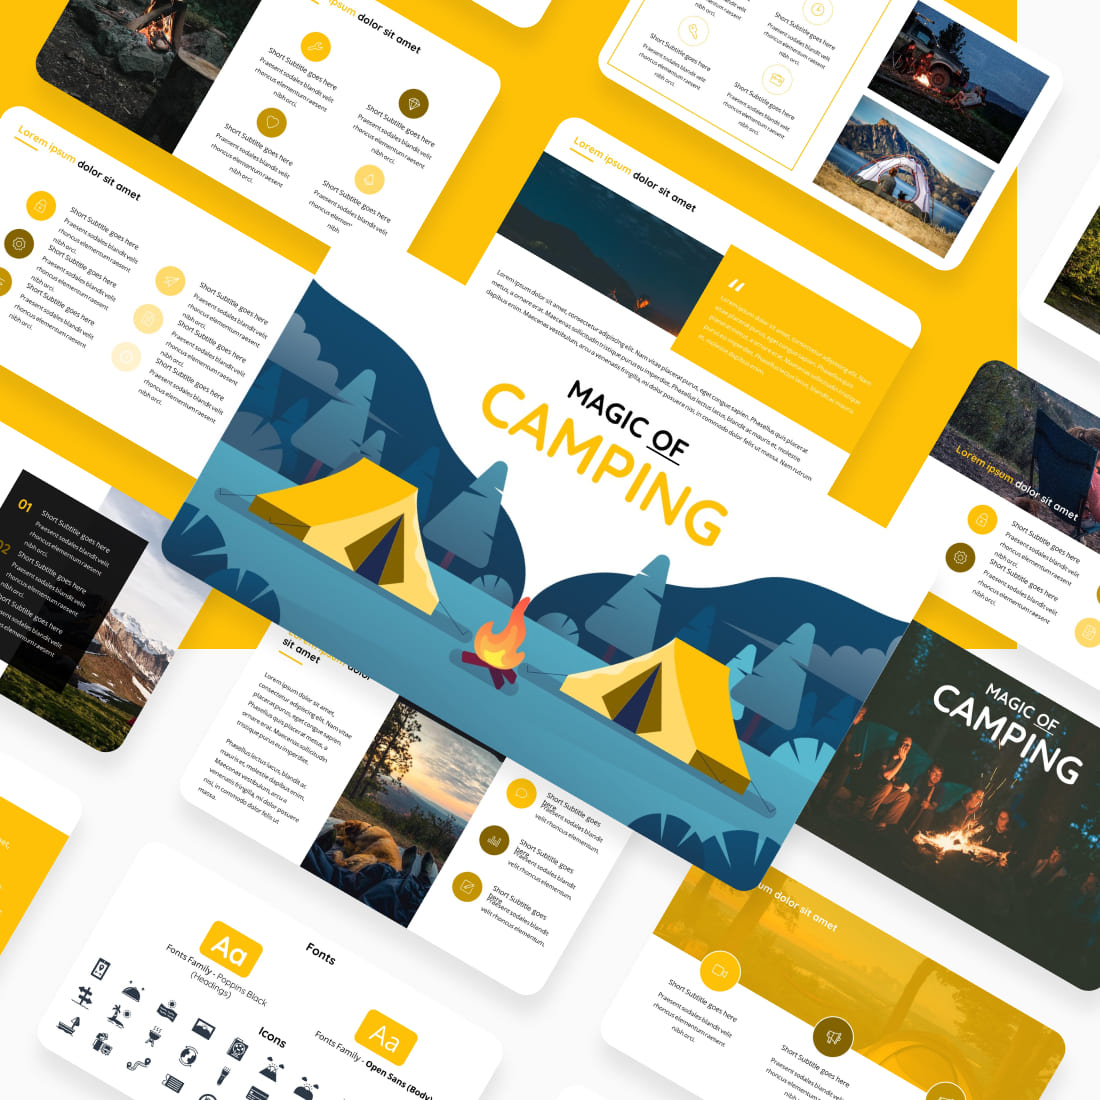 Camping Presentstion: 50 Slides PPTX, KEY, Google Slides cover image.